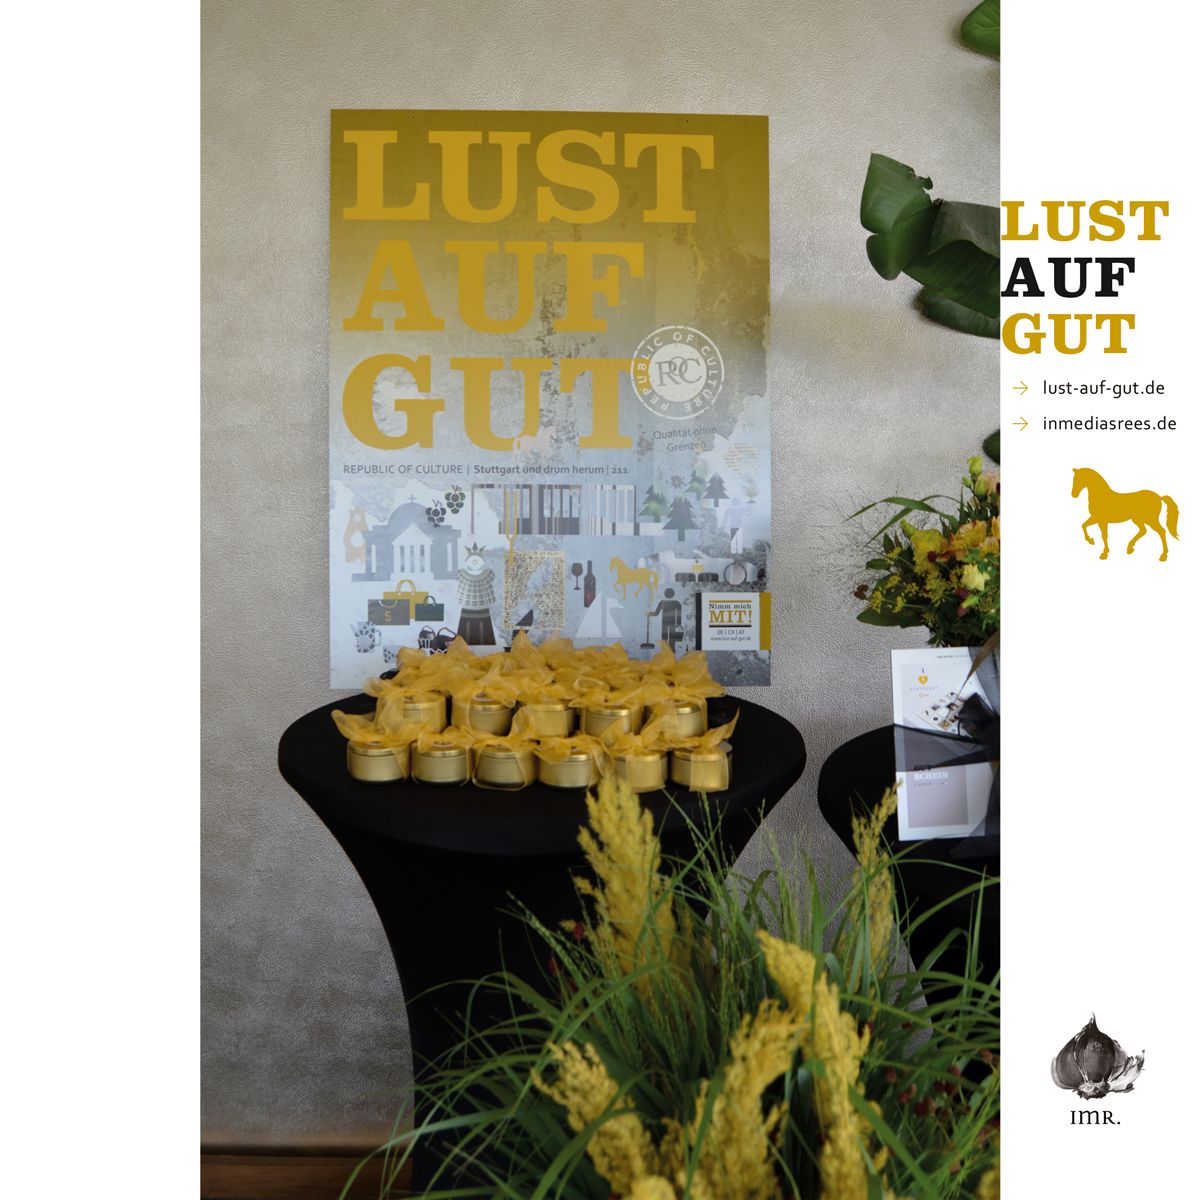 LUST AUF GUT-Event Stuttgart – Stuttgart Doppelt GUT gefeiert am 14. Juli 2022 im Restaurant Plenum